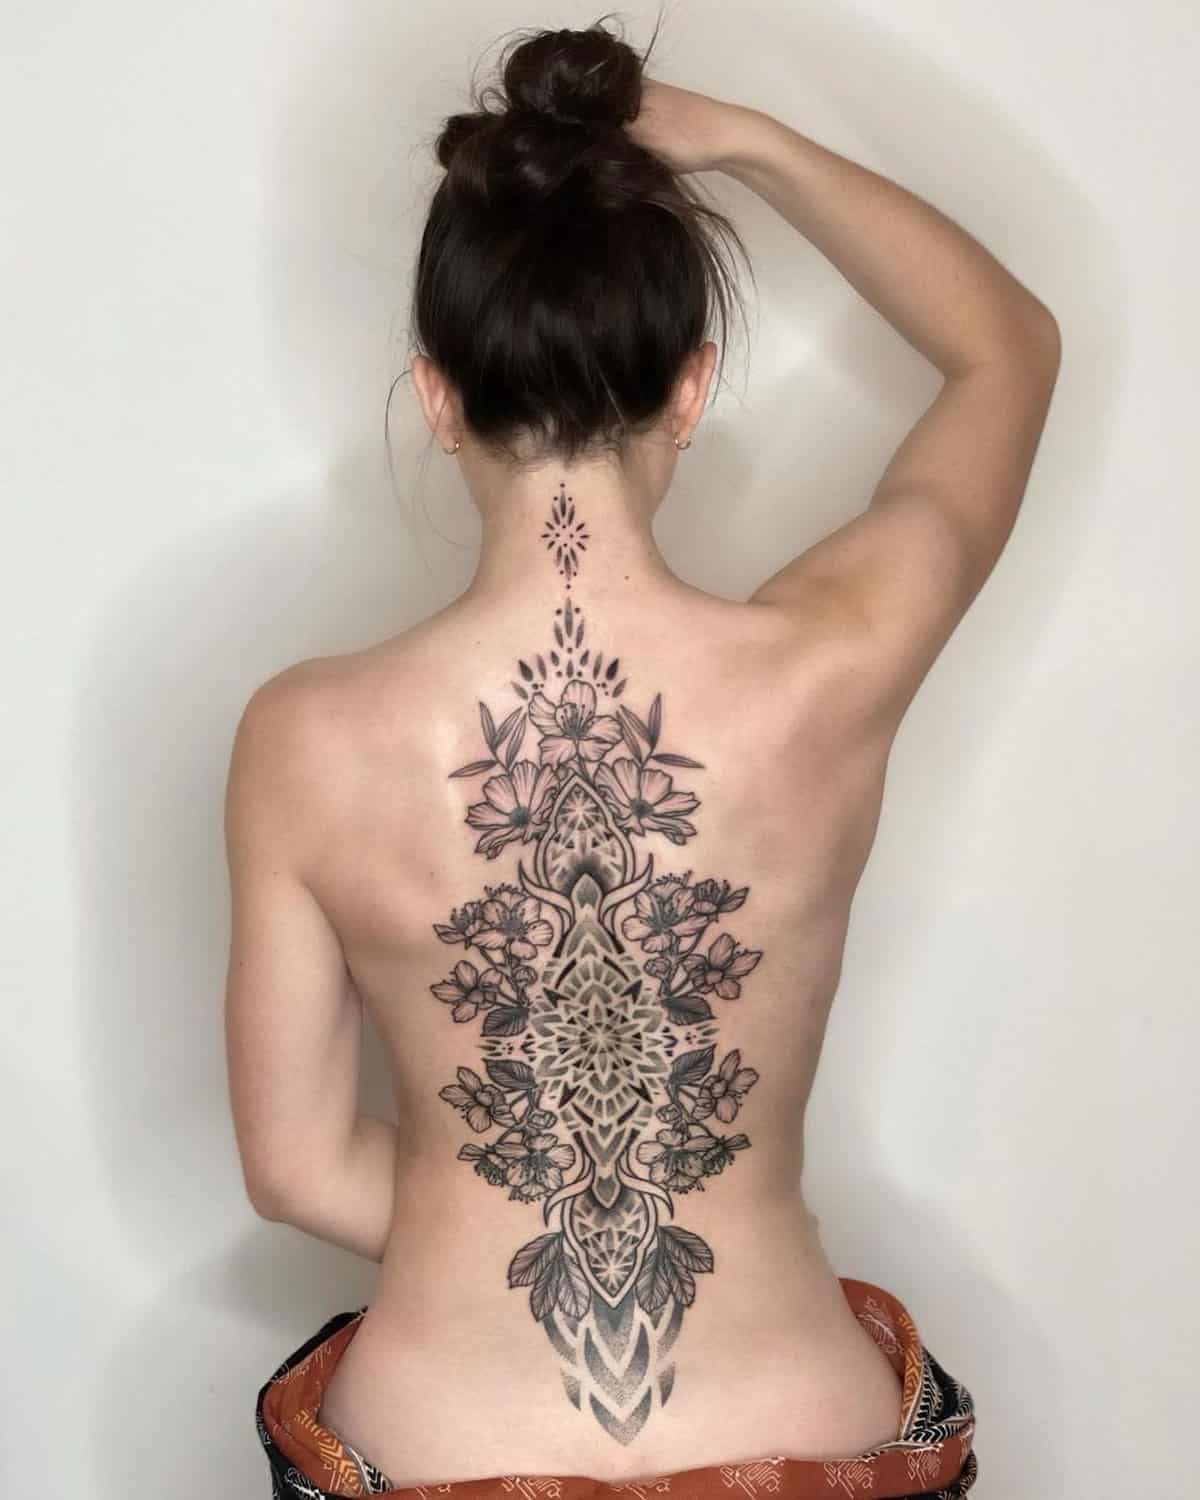 Feminine floral design tattoo